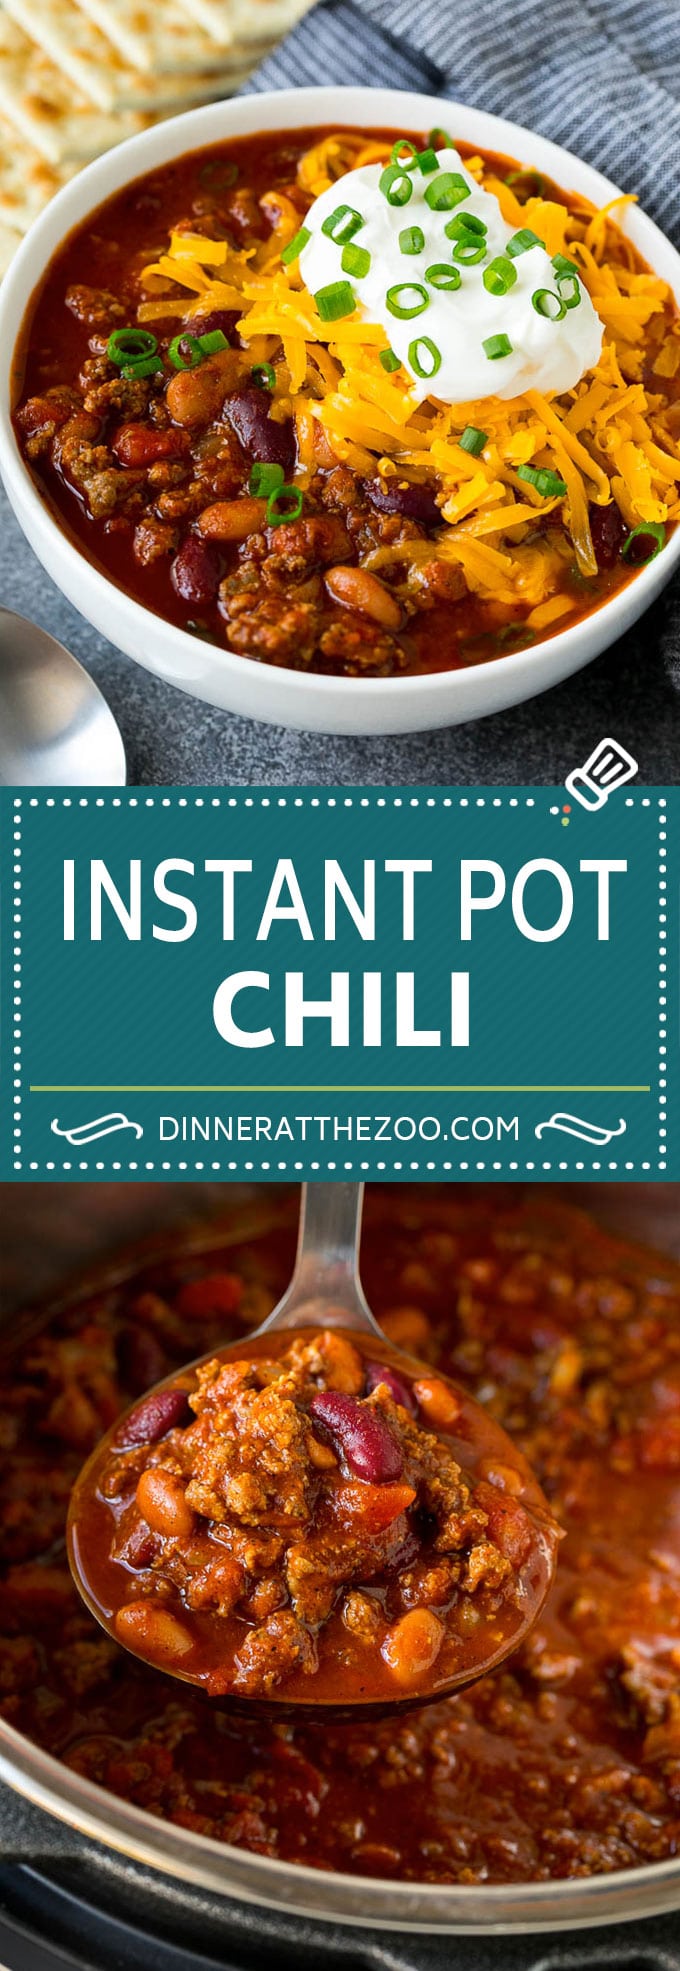 Instant Pot Chili Recipe | Pressure Cooker Chili | Beef Chili | Beef and Bean Chili #chili #beef #beans #instantpot #pressurecooker #dinner #soup #dinneratthezoo